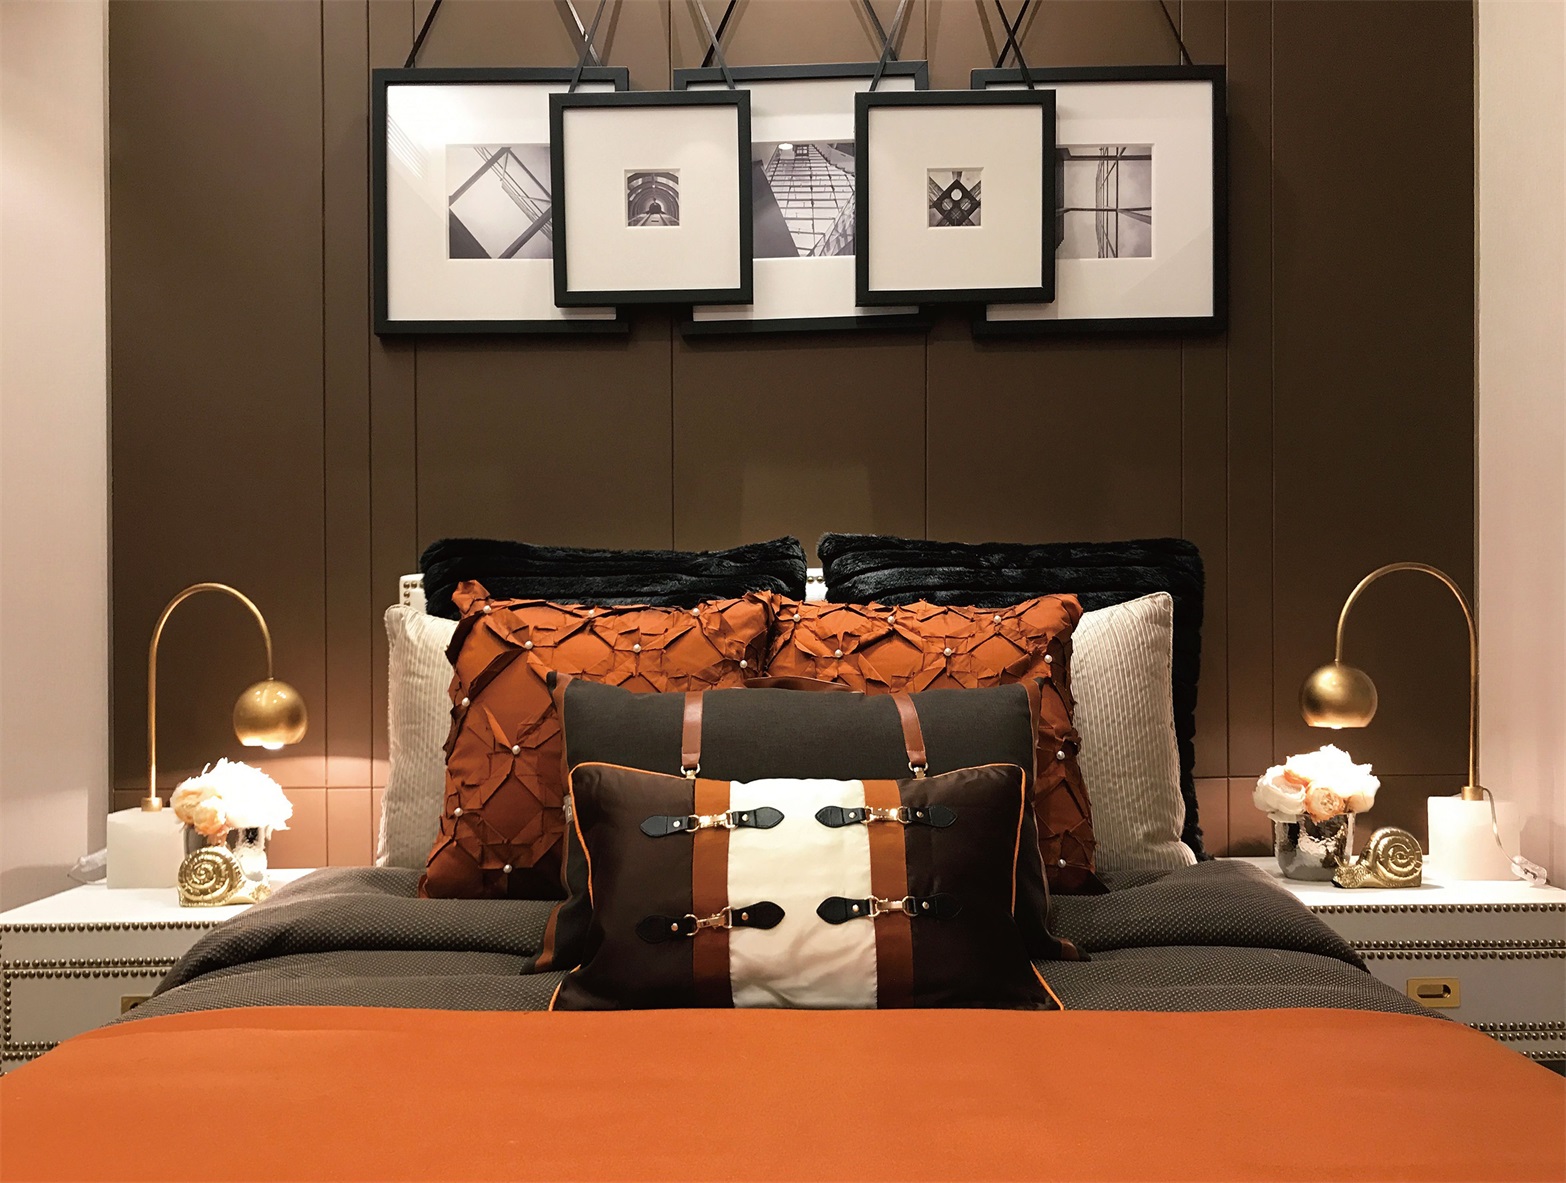 灰色护墙板搭配精致的灯具与摆件，给予次卧主人舒适温馨的生活体验。